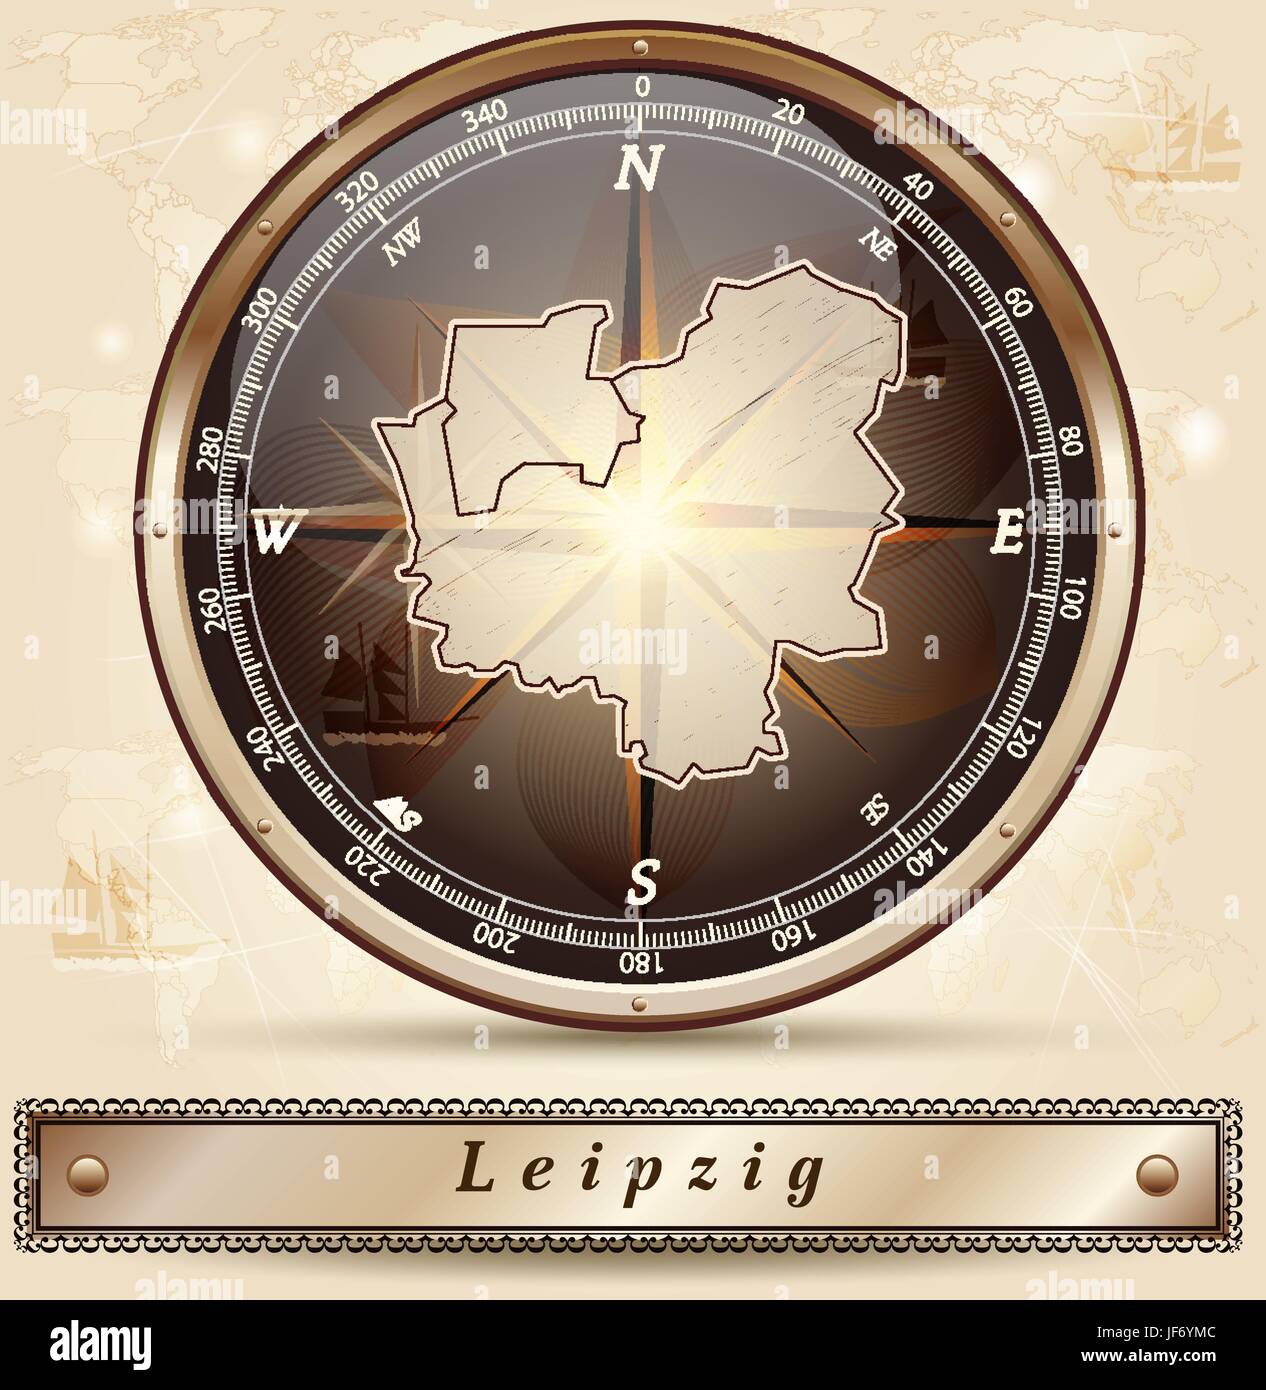 Leipzig, Karte, Atlas, Karte von Welt, Karte, Illustration, Sachsen, Leipzig, Stock Vektor